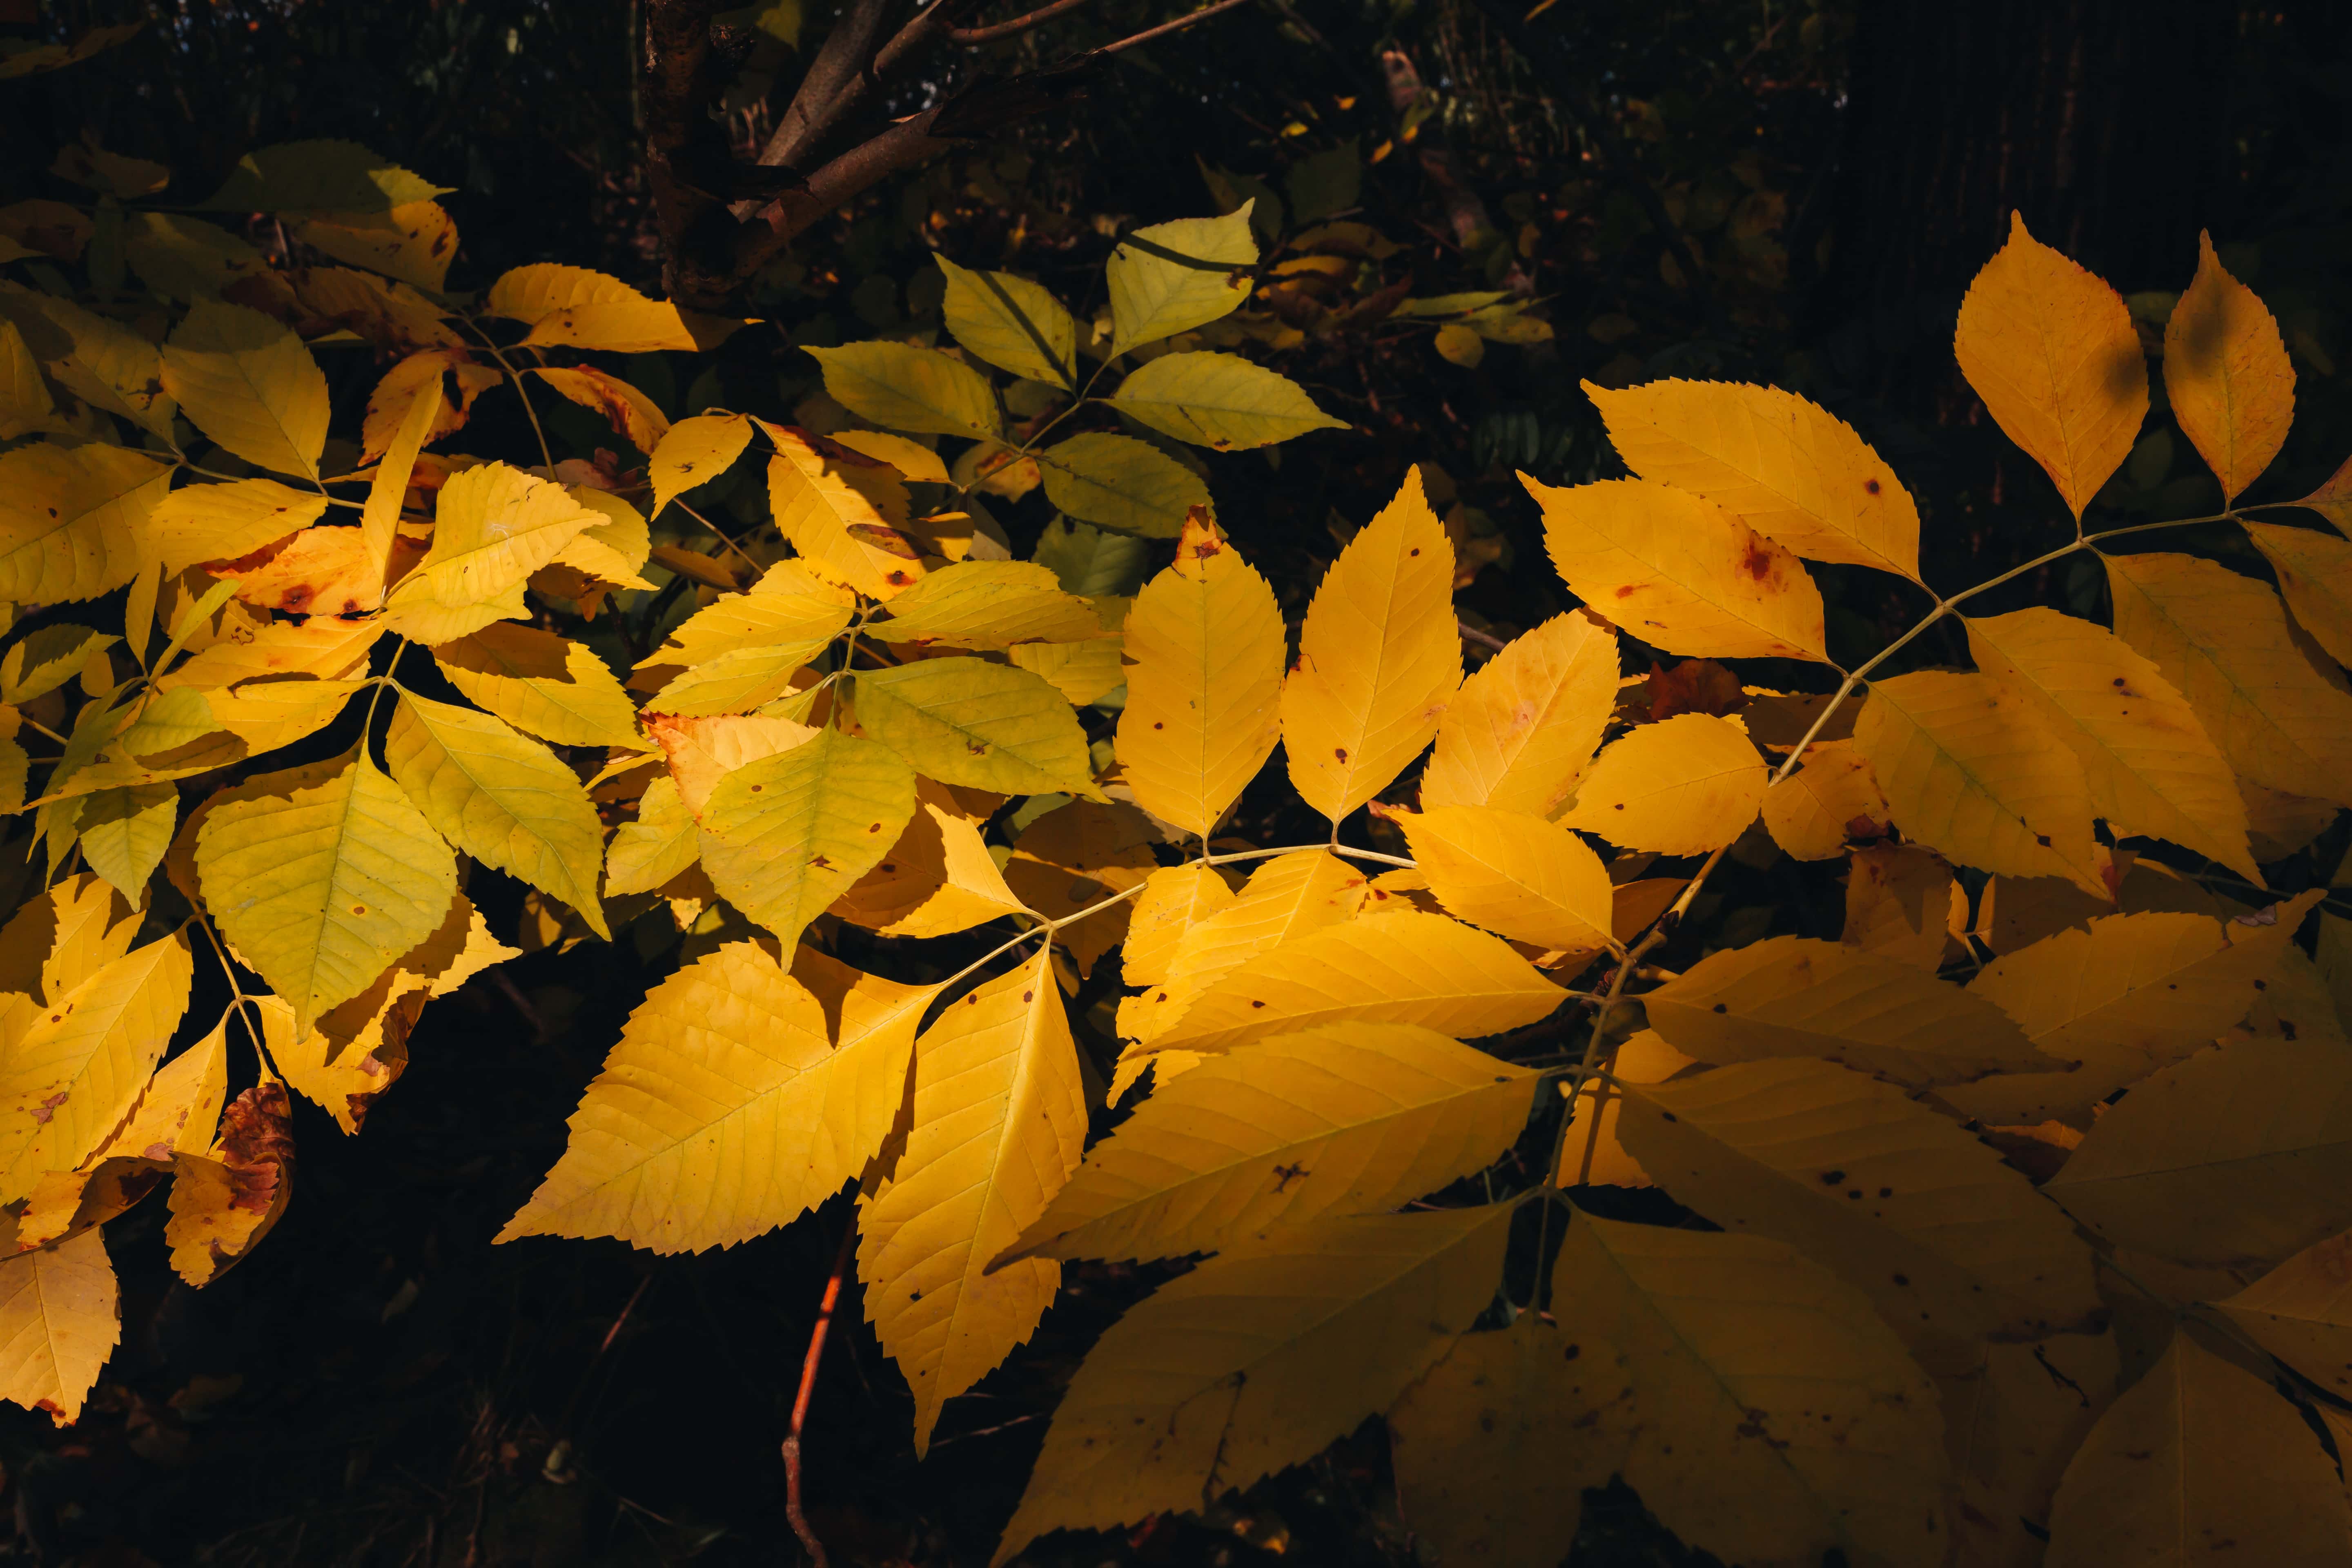 Por que se ponen amarillas las hojas